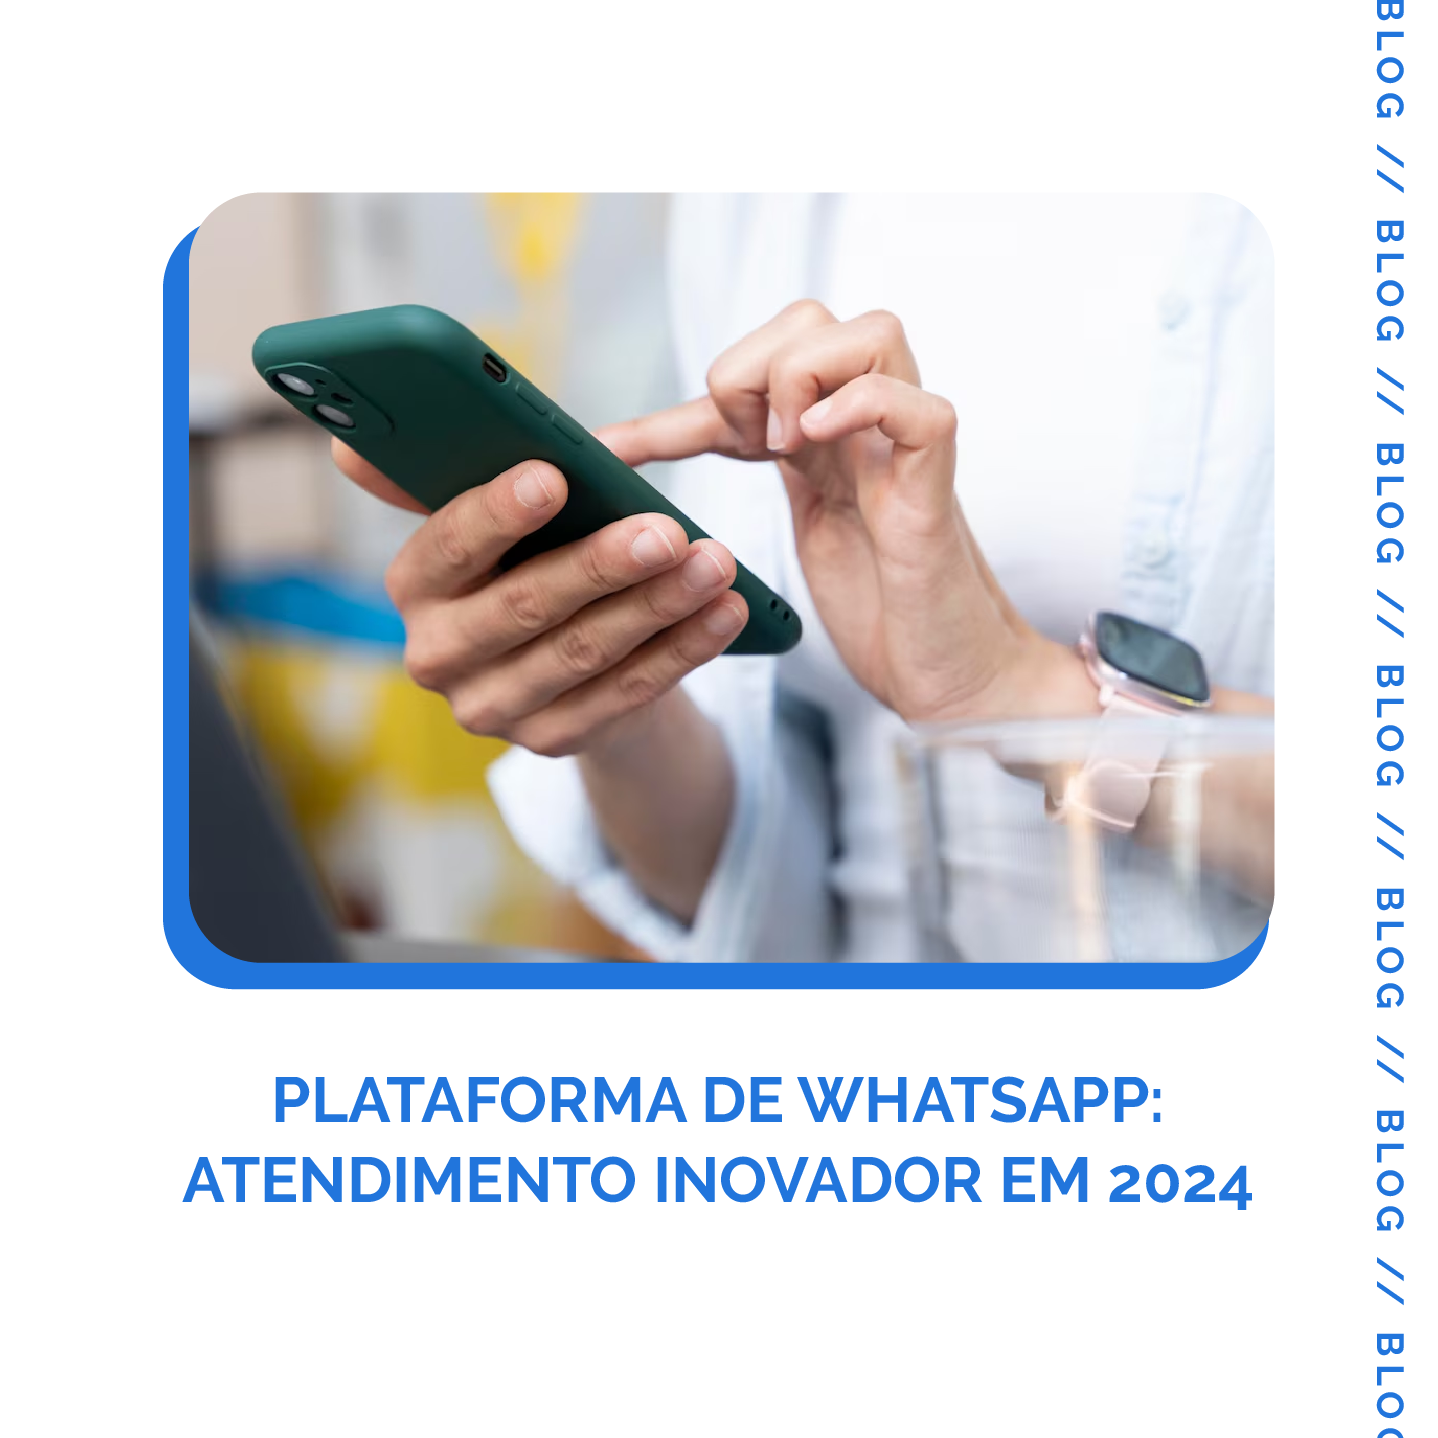 Você está visualizando atualmente Plataforma de WhatsApp: Atendimento Inovador em 2024